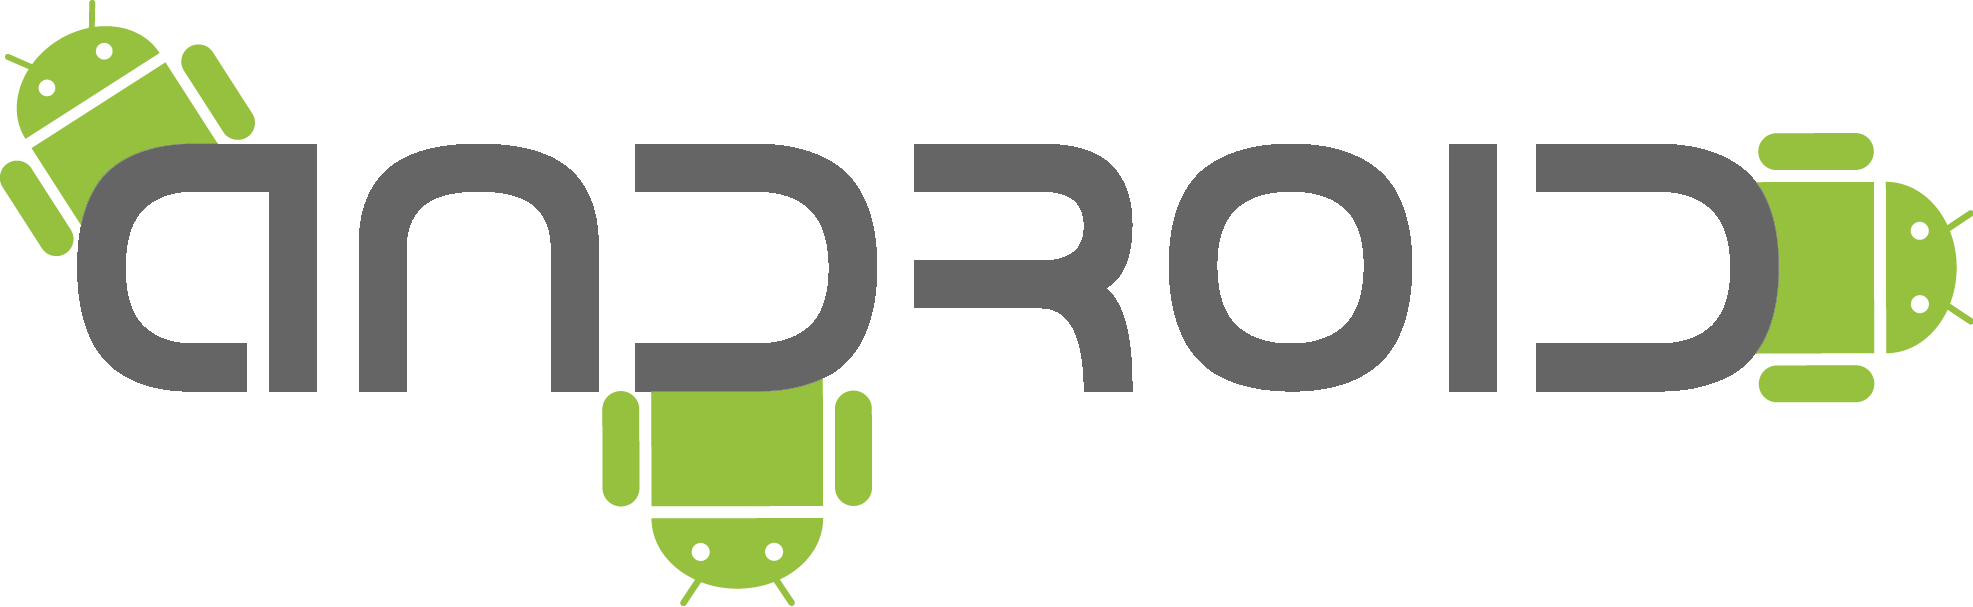 Логотип андроид. Android надпись. Логотип андроид без фона. Android текст.